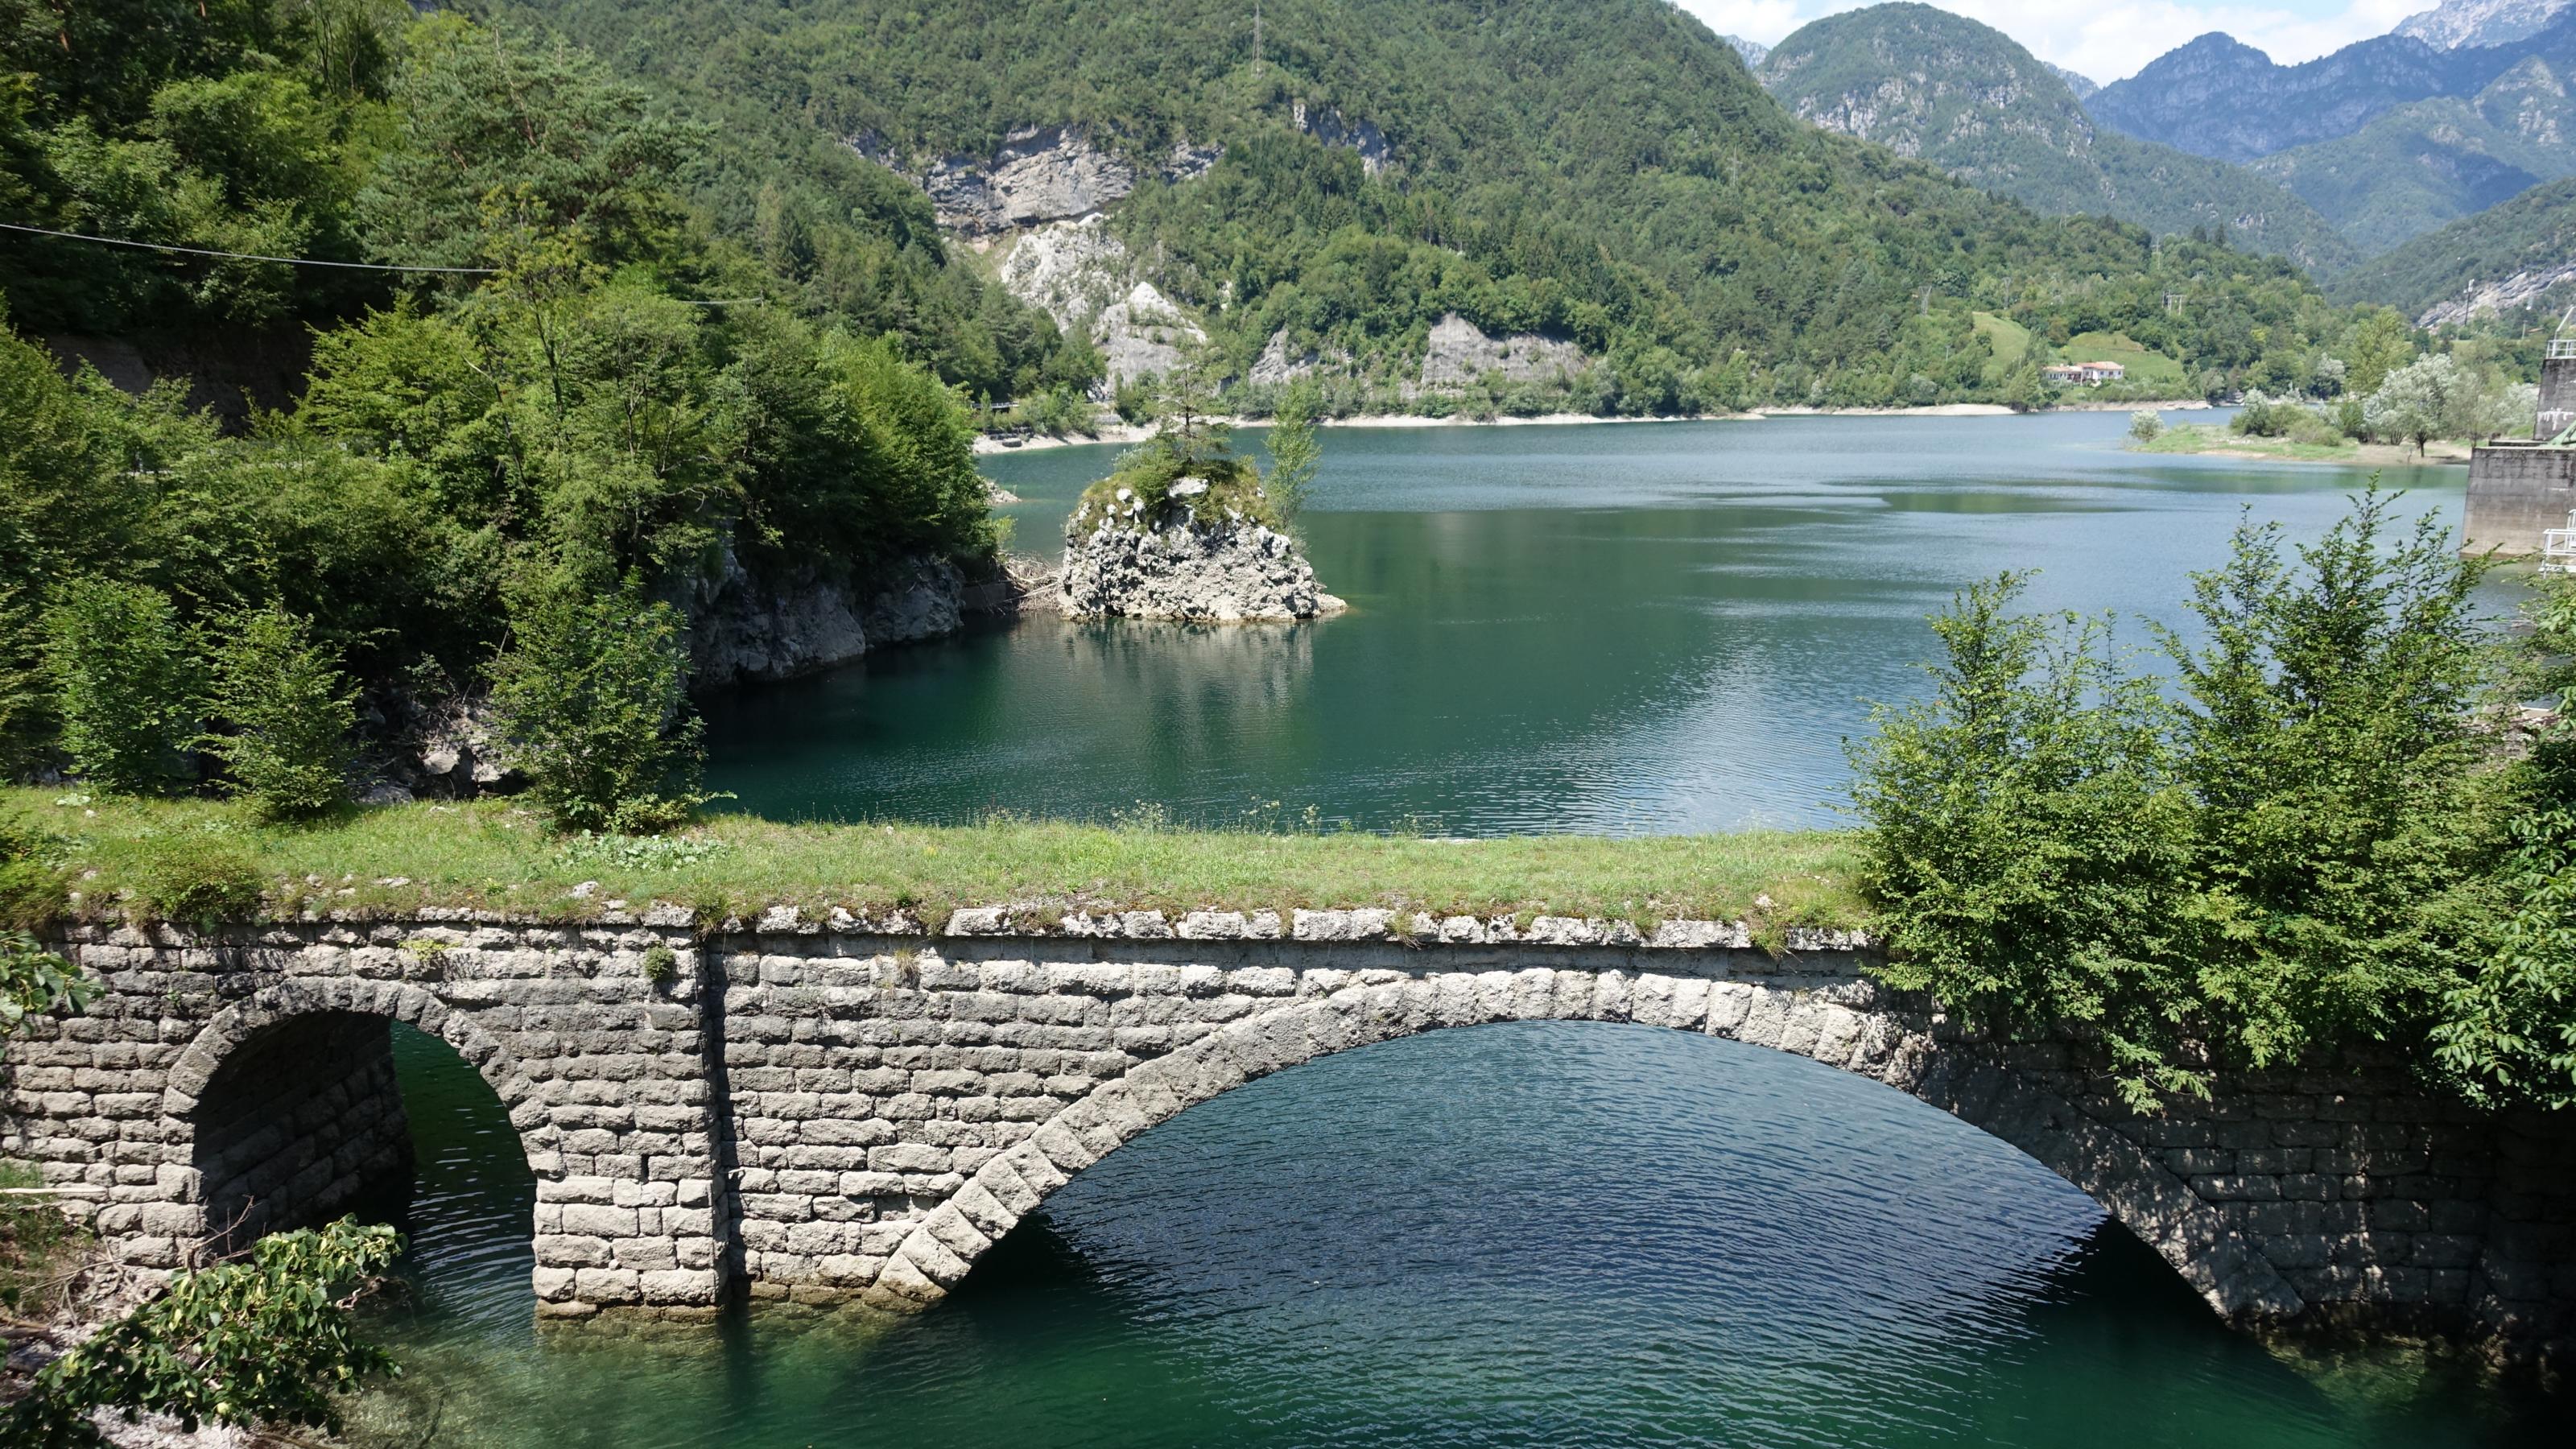 Stausee des Flusses Meduna, dahinter schroffe Berge mit Wald, vorne eine alte Steinbrücke